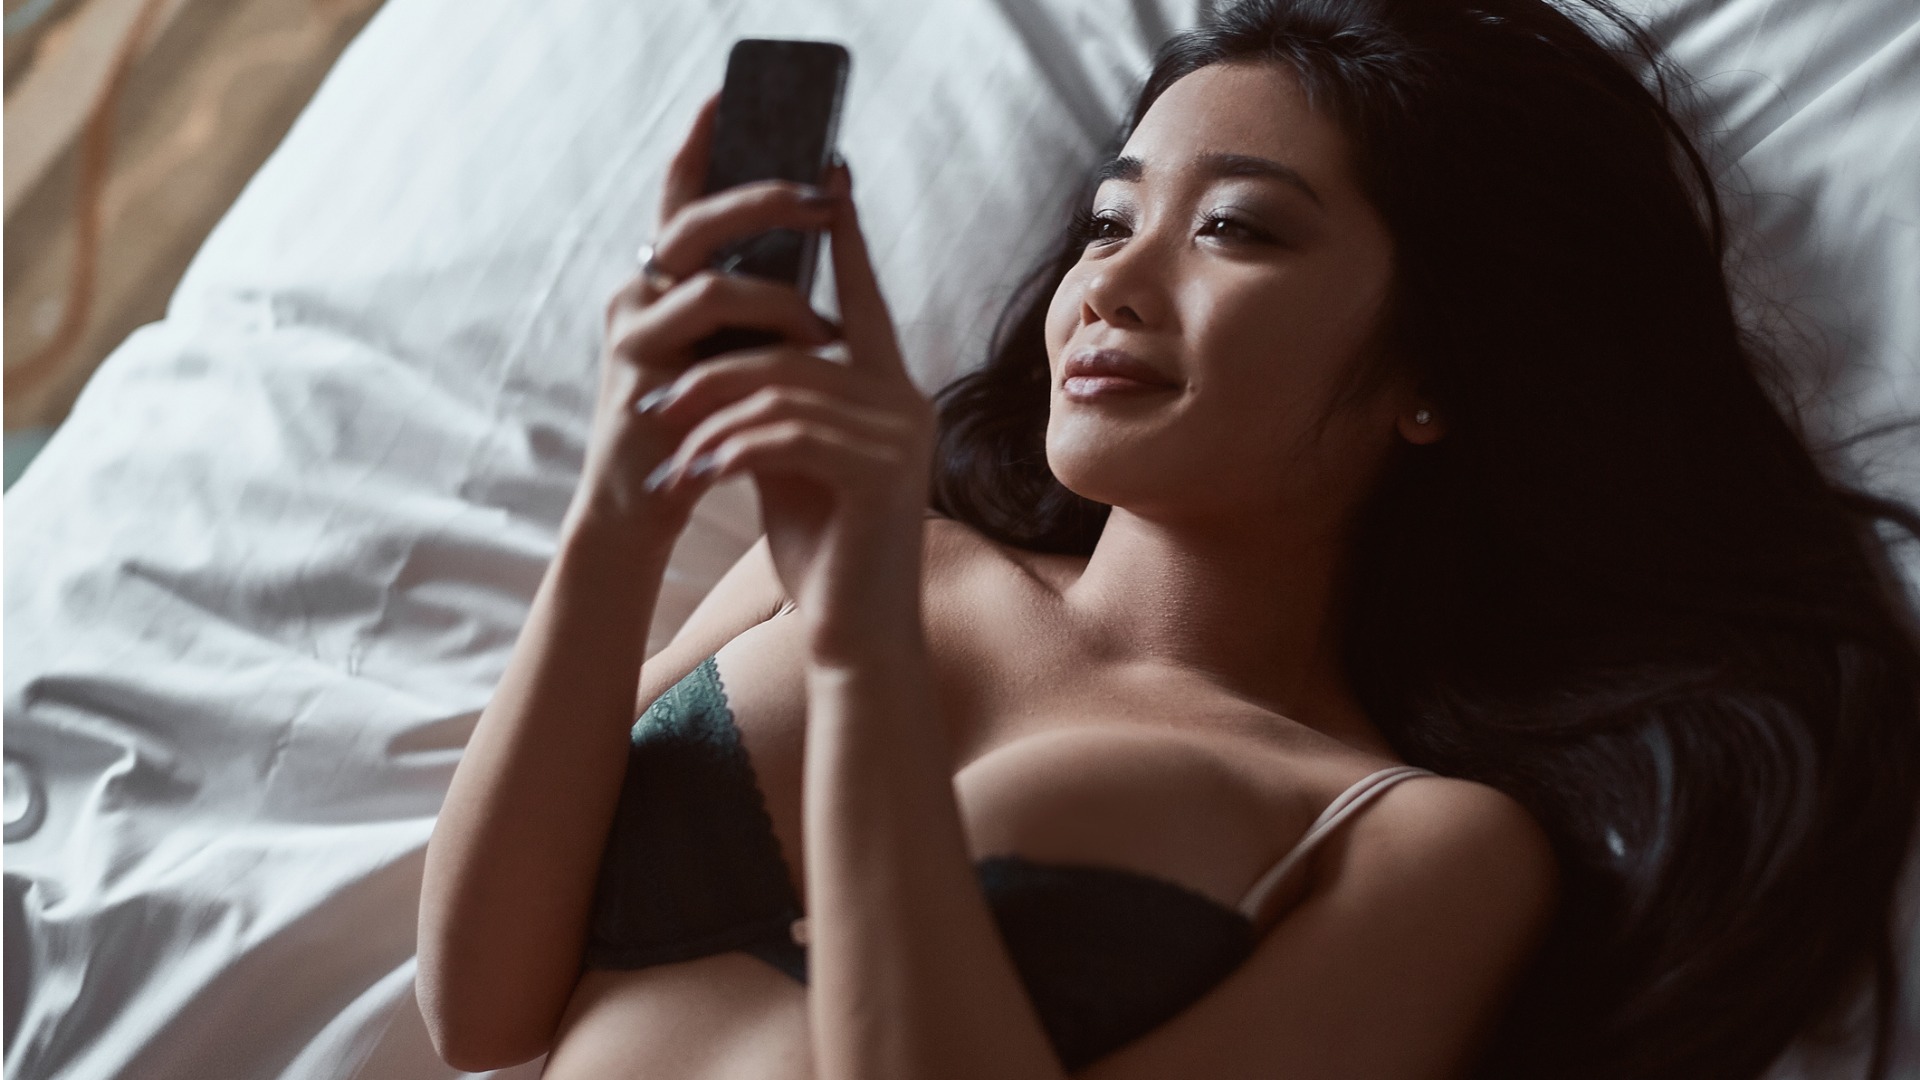 Frau sextet mit sexy Unterwäsche